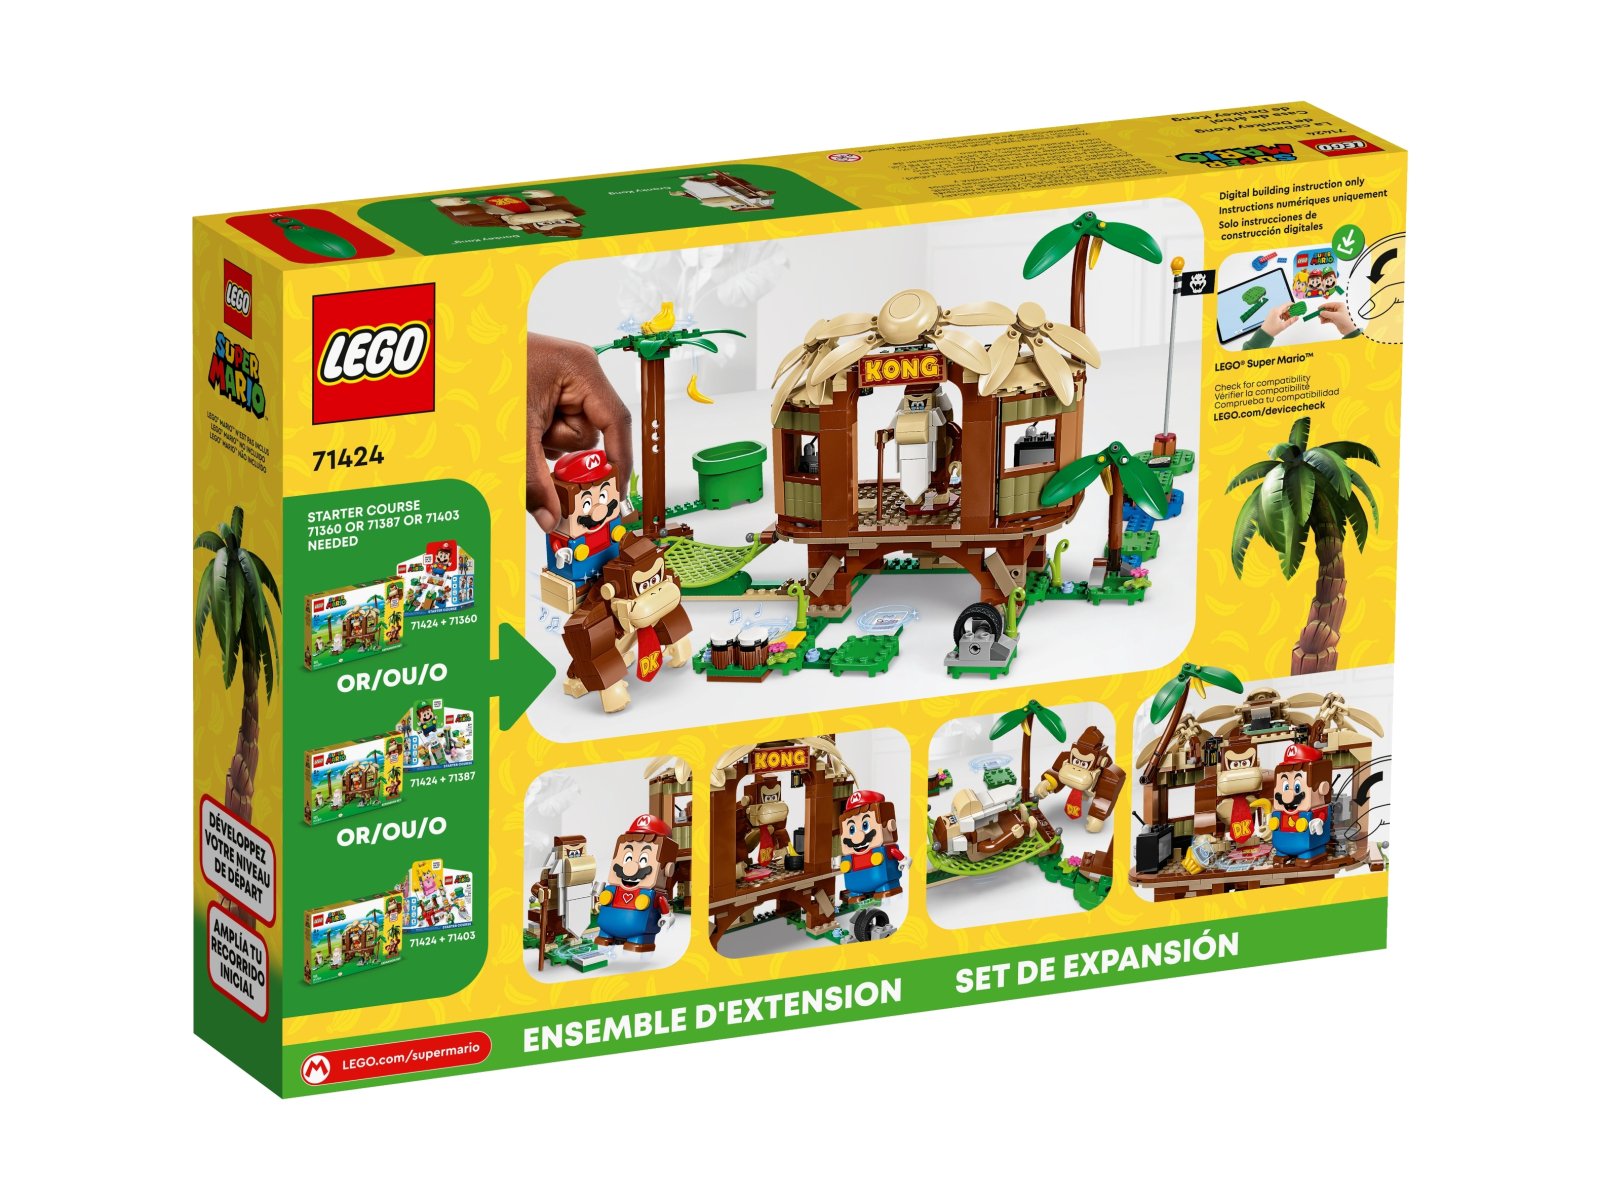 LEGO Super Mario Domek na drzewie Donkey Konga — zestaw rozszerzający 71424